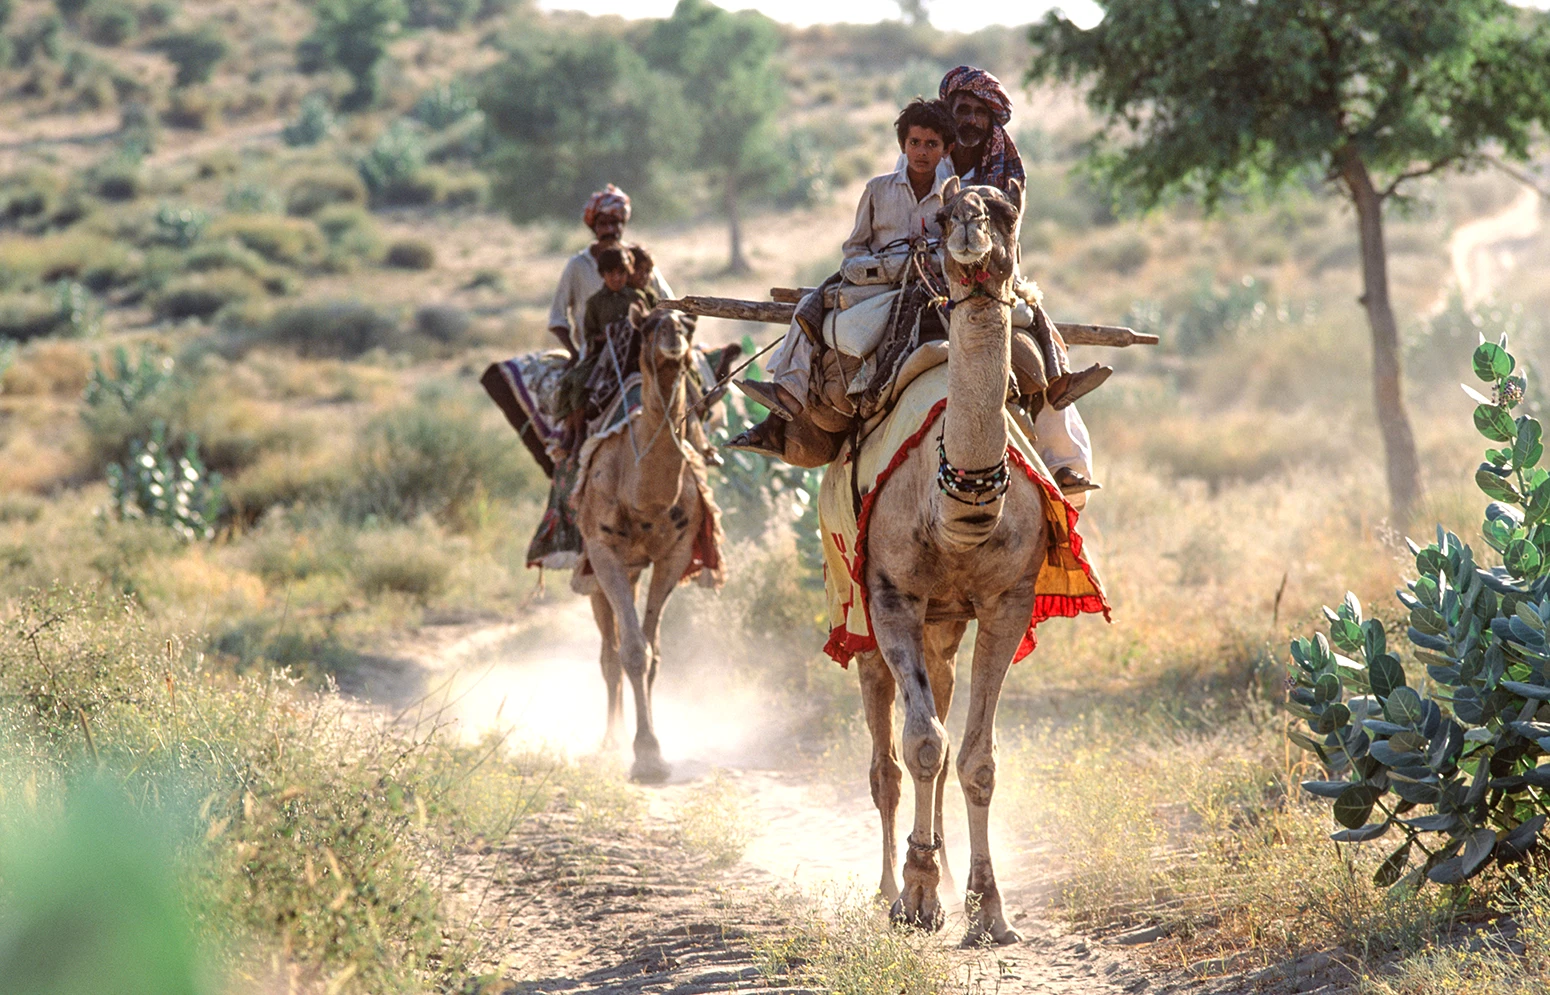 Thari nomads on camelback. Thar Desert, Pakistan.